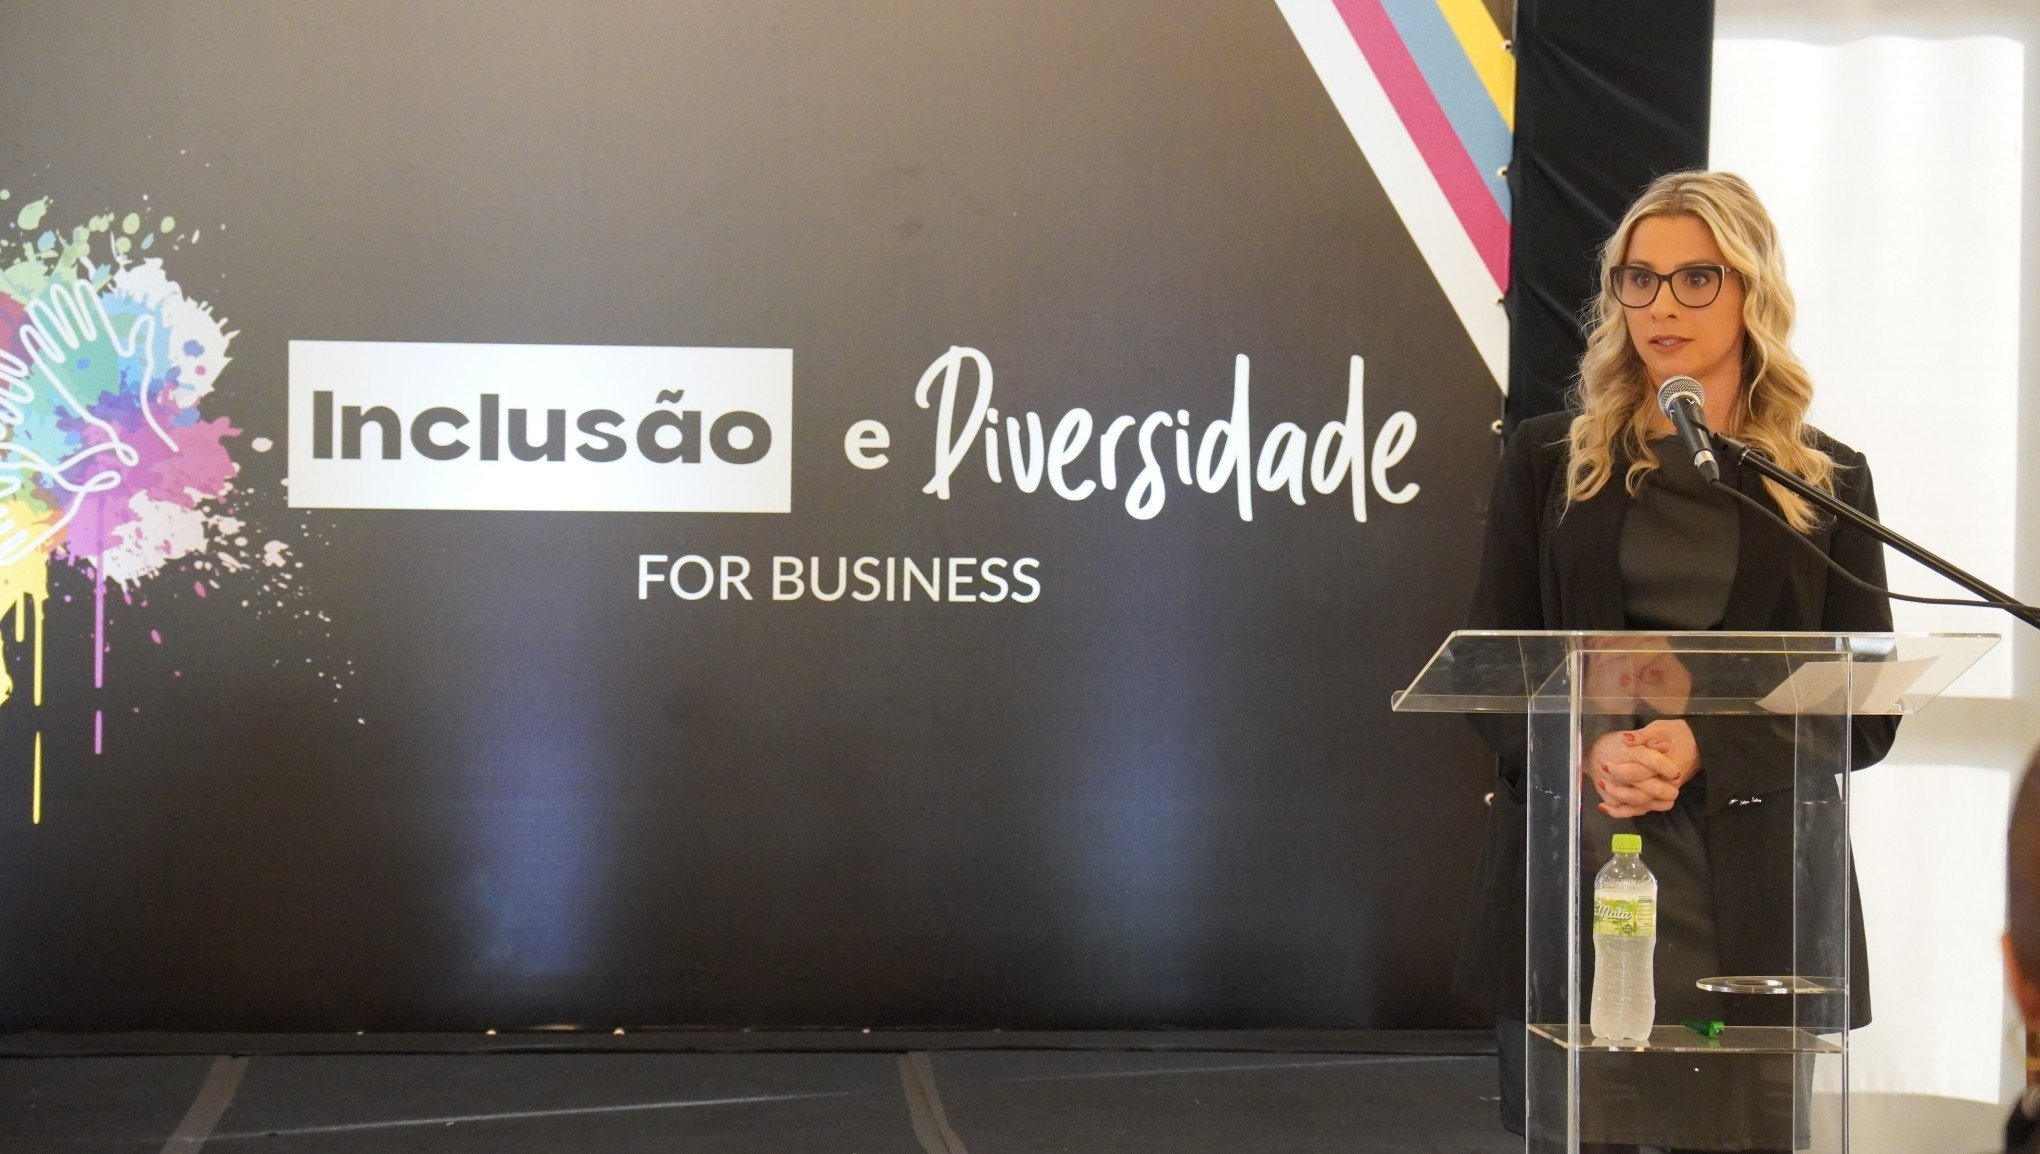 Prêmio Inclusão e Diversidade for business revela vencedores